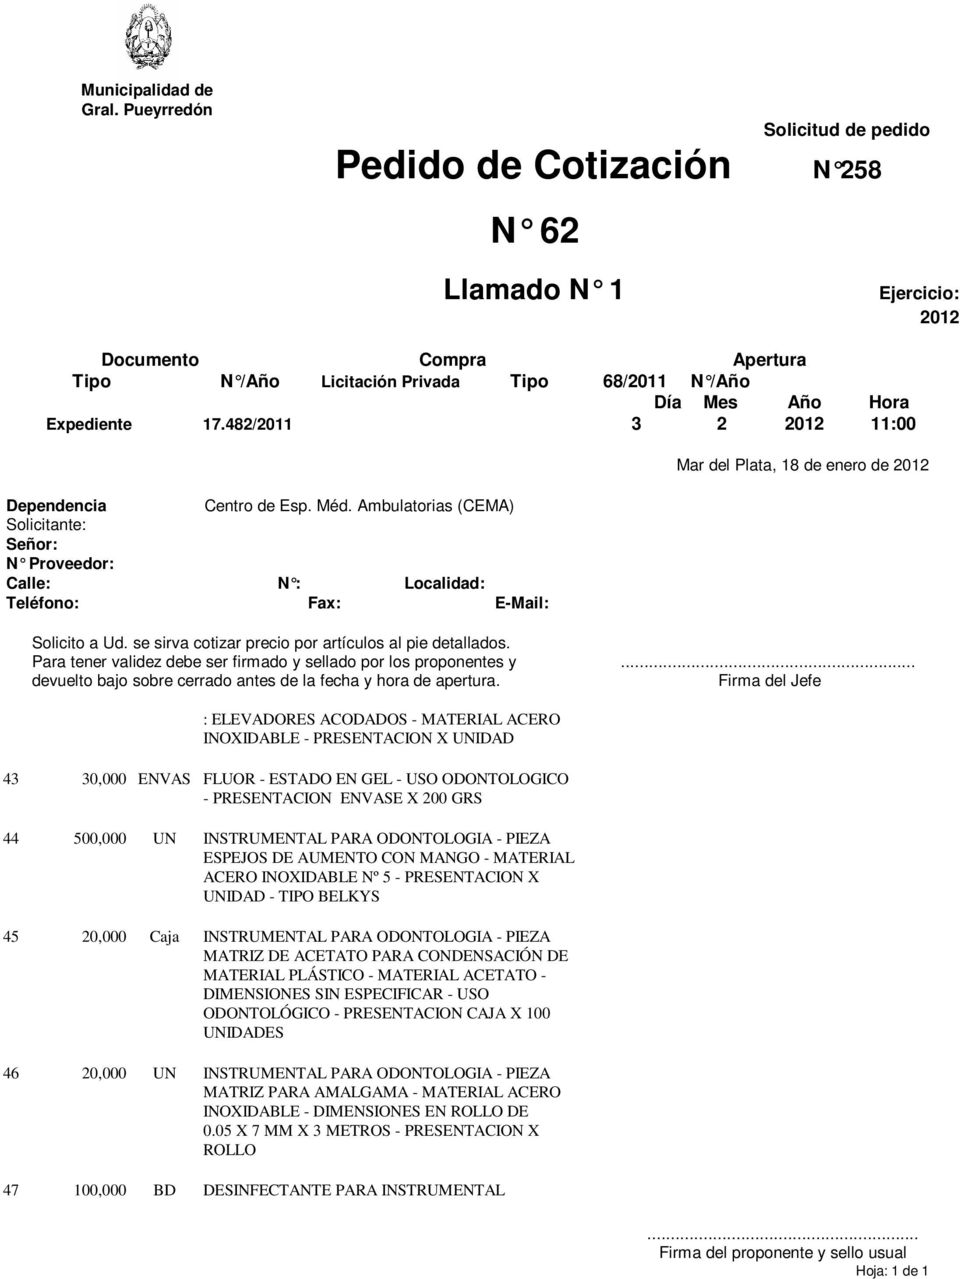 ESPEJOS DE AUMENTO CON MANGO - MATERIAL ACERO INOXIDABLE Nº 5 - PRESENTACION X - TIPO BELKYS 45 20,000 Caja INSTRUMENTAL PARA ODONTOLOGIA - PIEZA MATRIZ DE ACETATO PARA CONDENSACIÓN DE MATERIAL